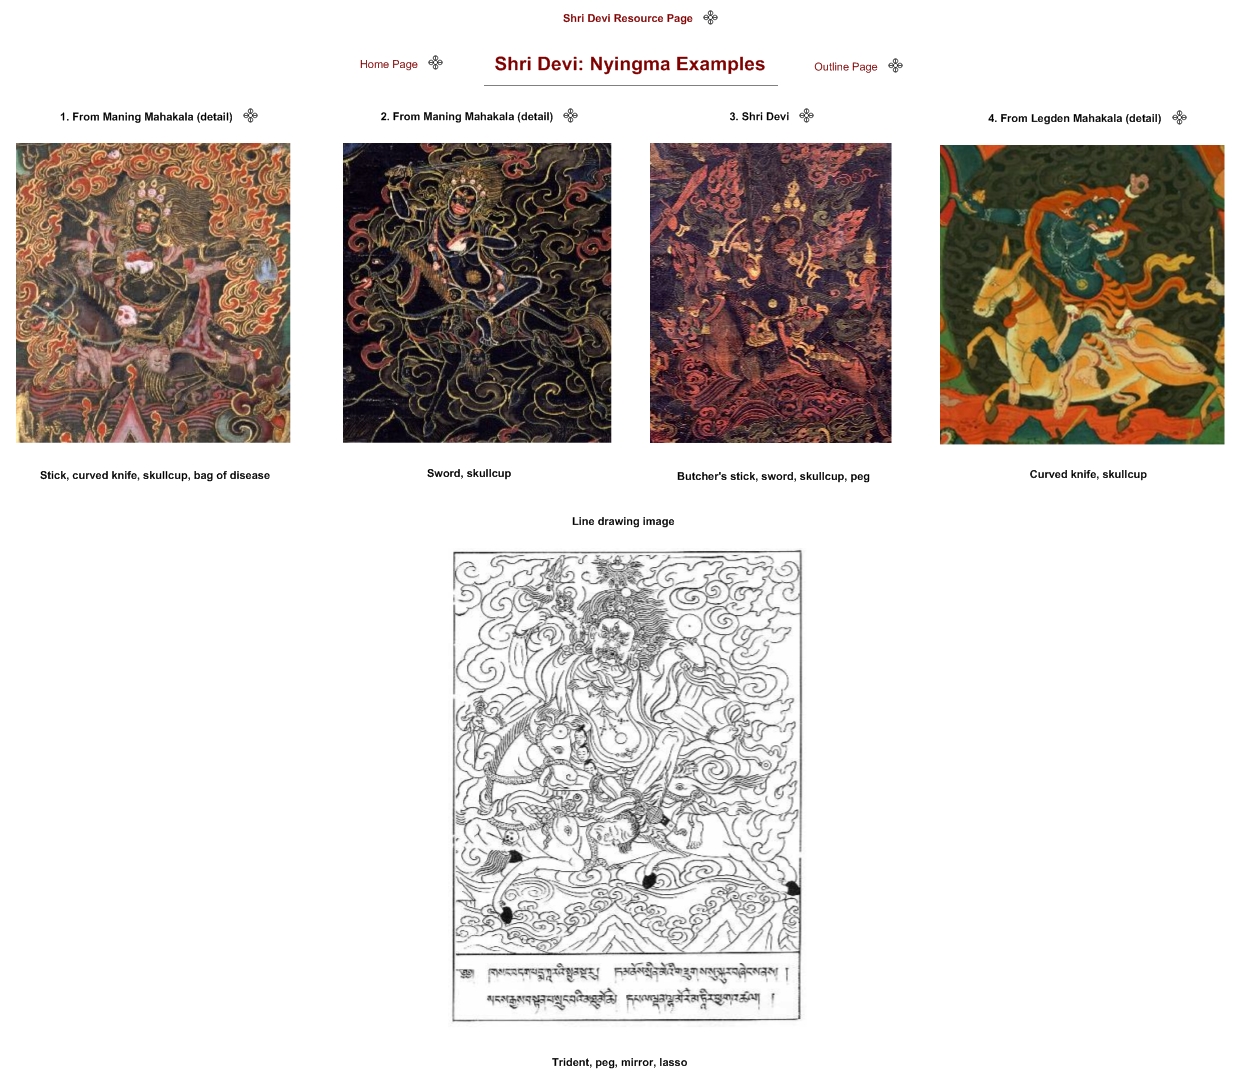 Shri Devi: Nyingma Examples